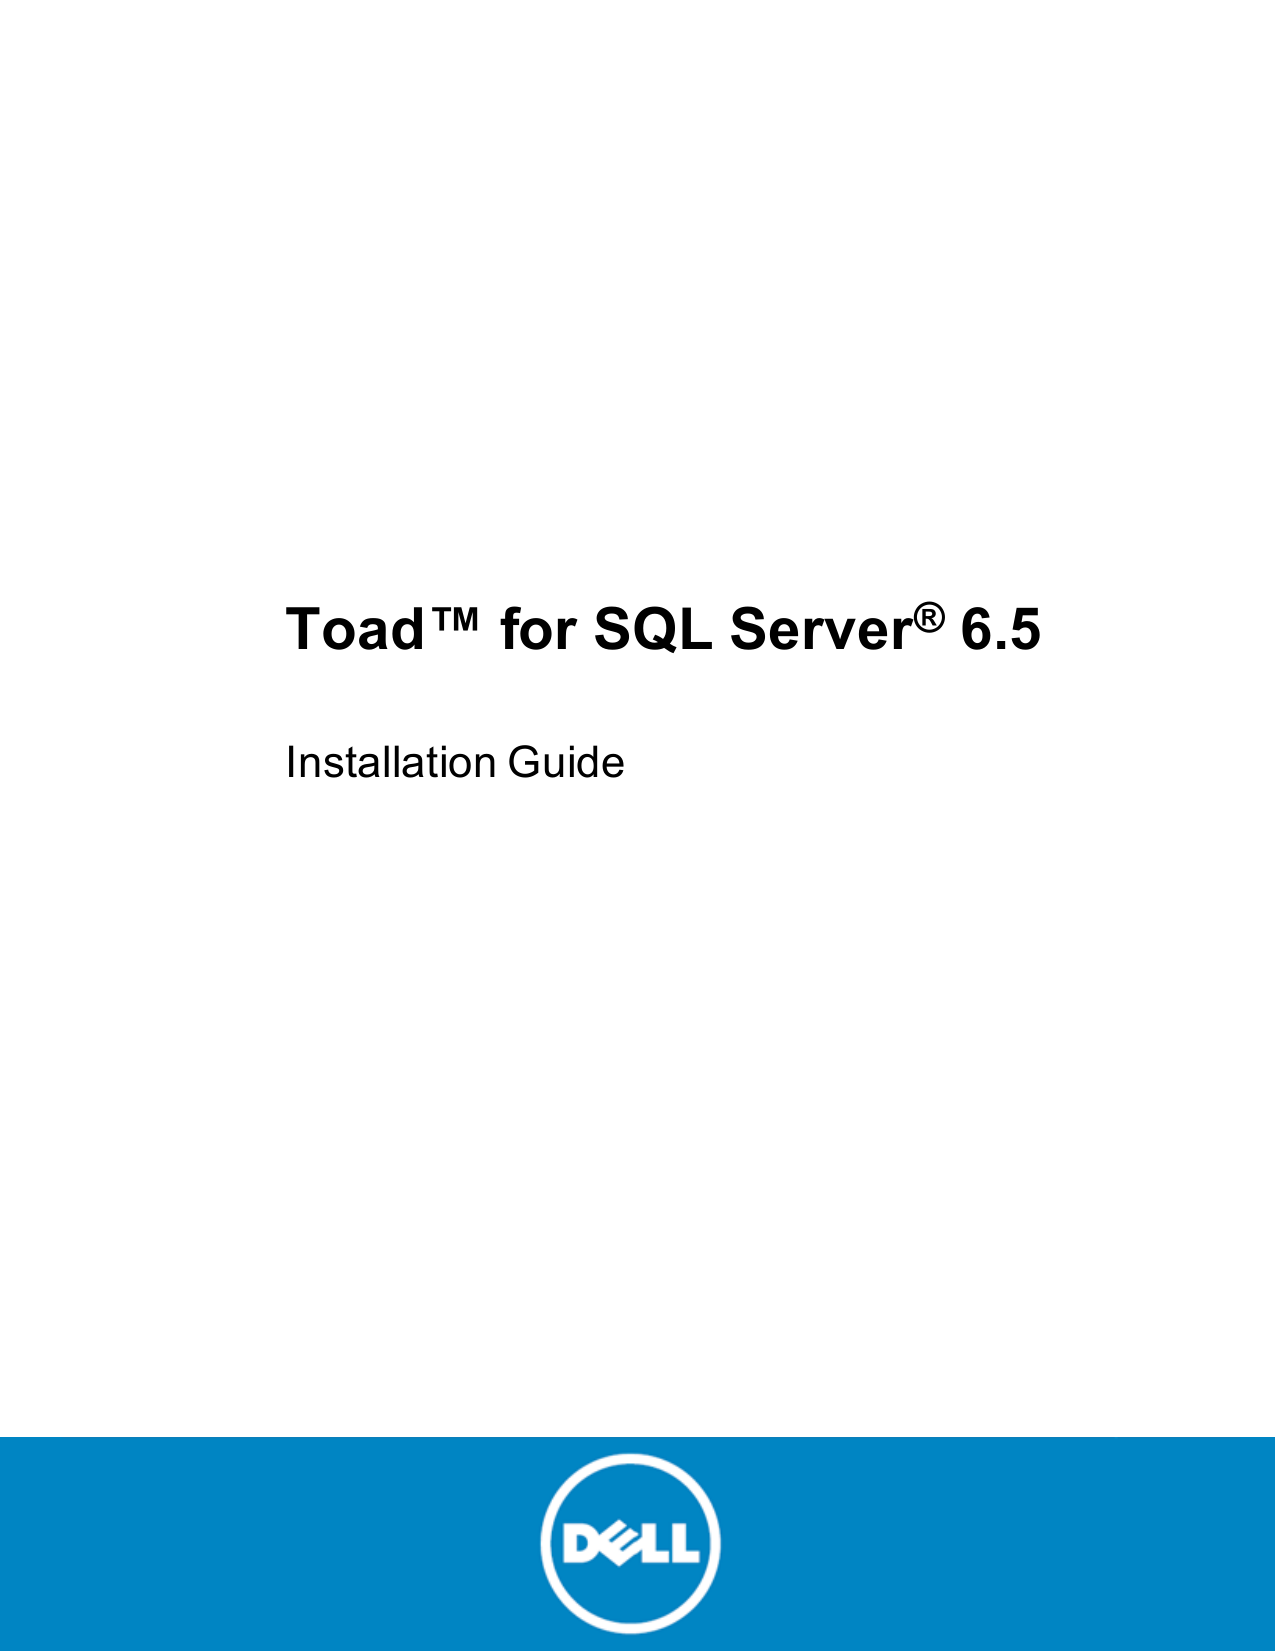 toad sql server client tools